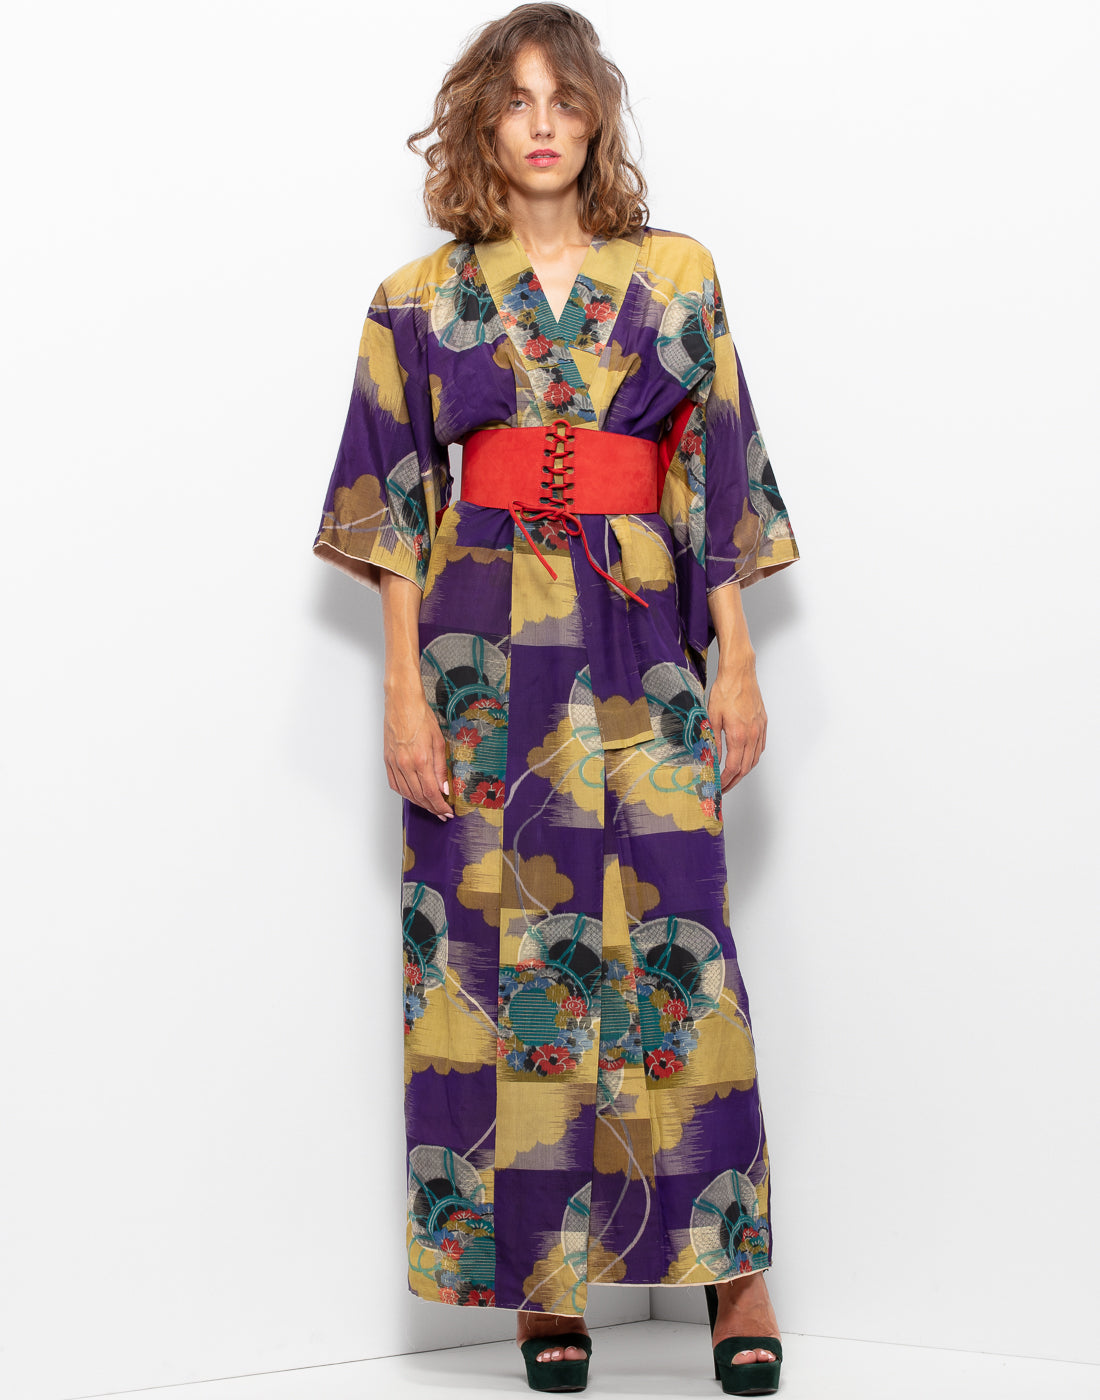 Unique Kimono coat/dress